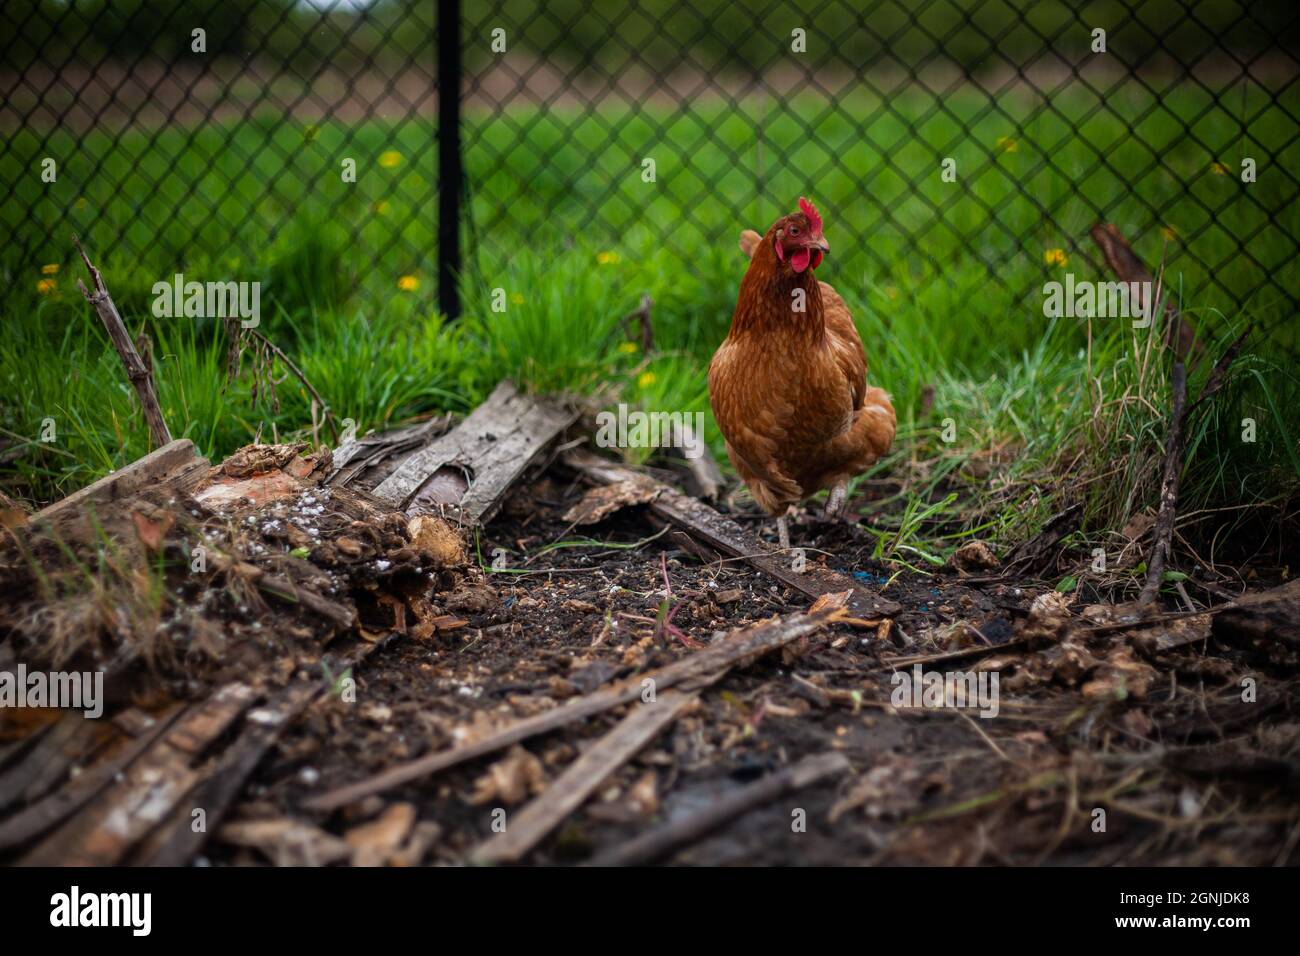 Braunes Huhn auf einem Bauernhof mit Gras und Zaun im Hintergrund | Foto schließen von einem braunen Huhn, das zwischen Holzstücken und einigen Brettern läuft Stockfoto